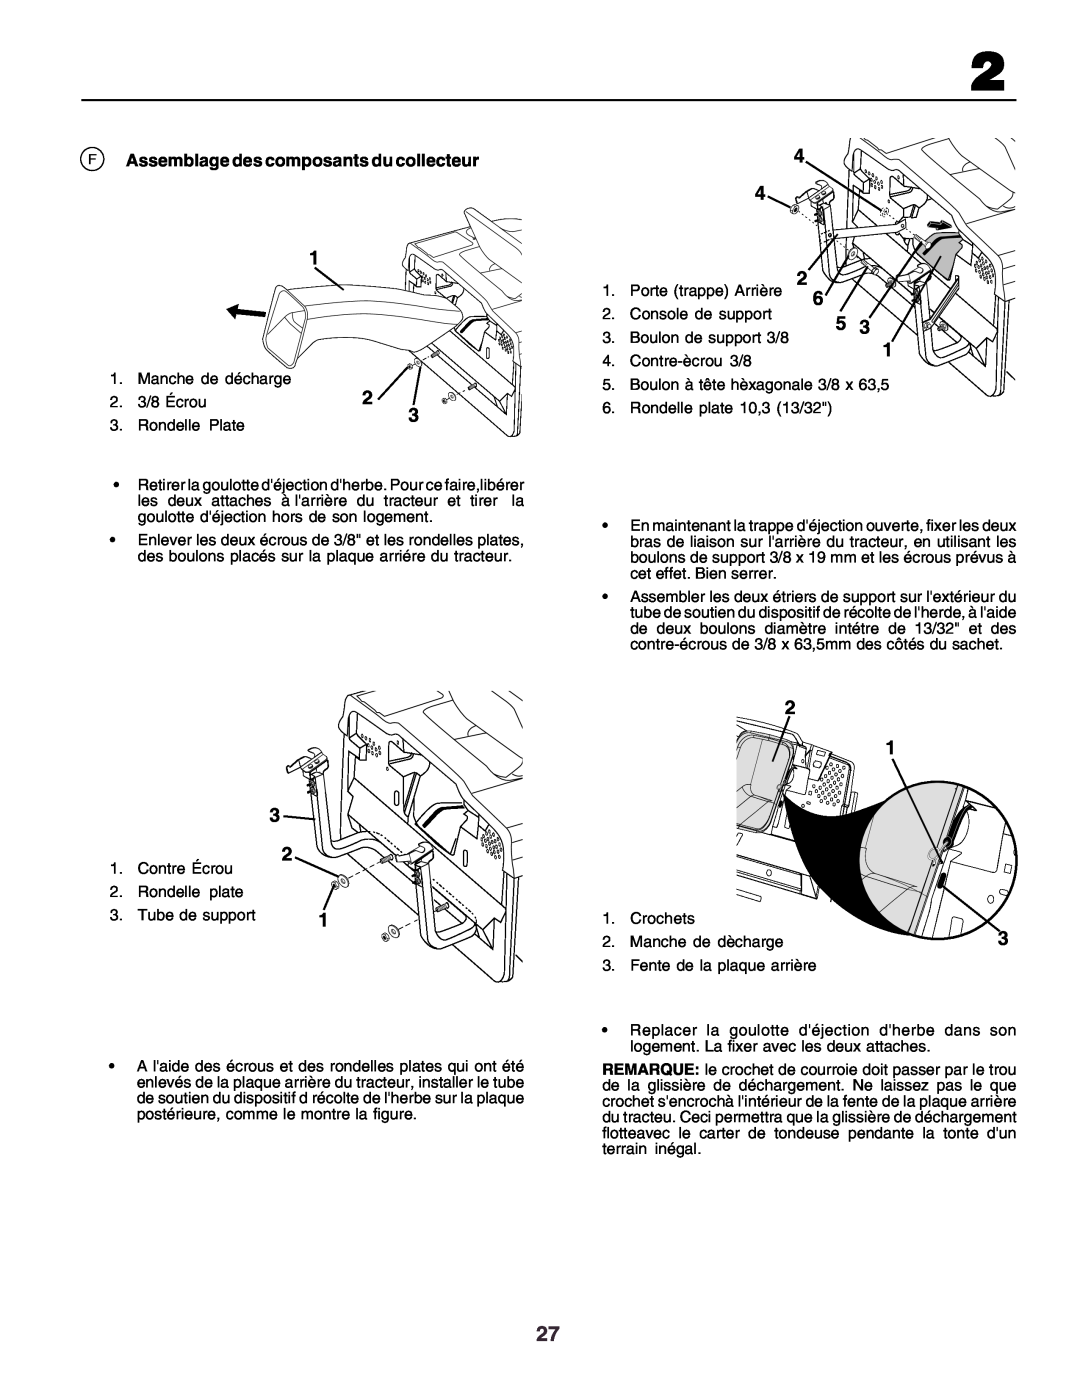 Husqvarna CT130 instruction manual F Assemblage des composants du collecteur 